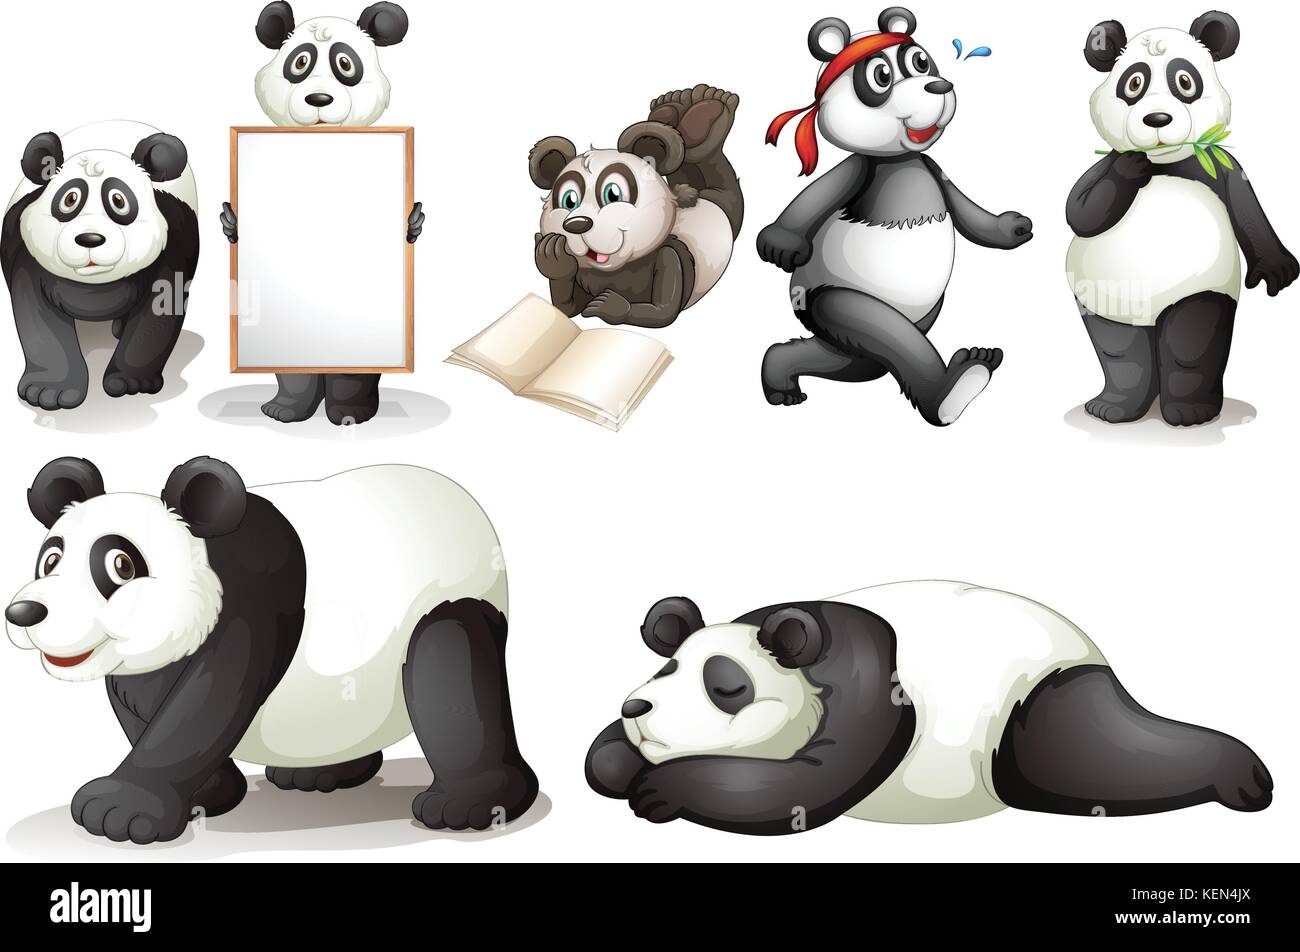 Darstellung der sieben Pandas auf weißem Hintergrund Stock Vektor